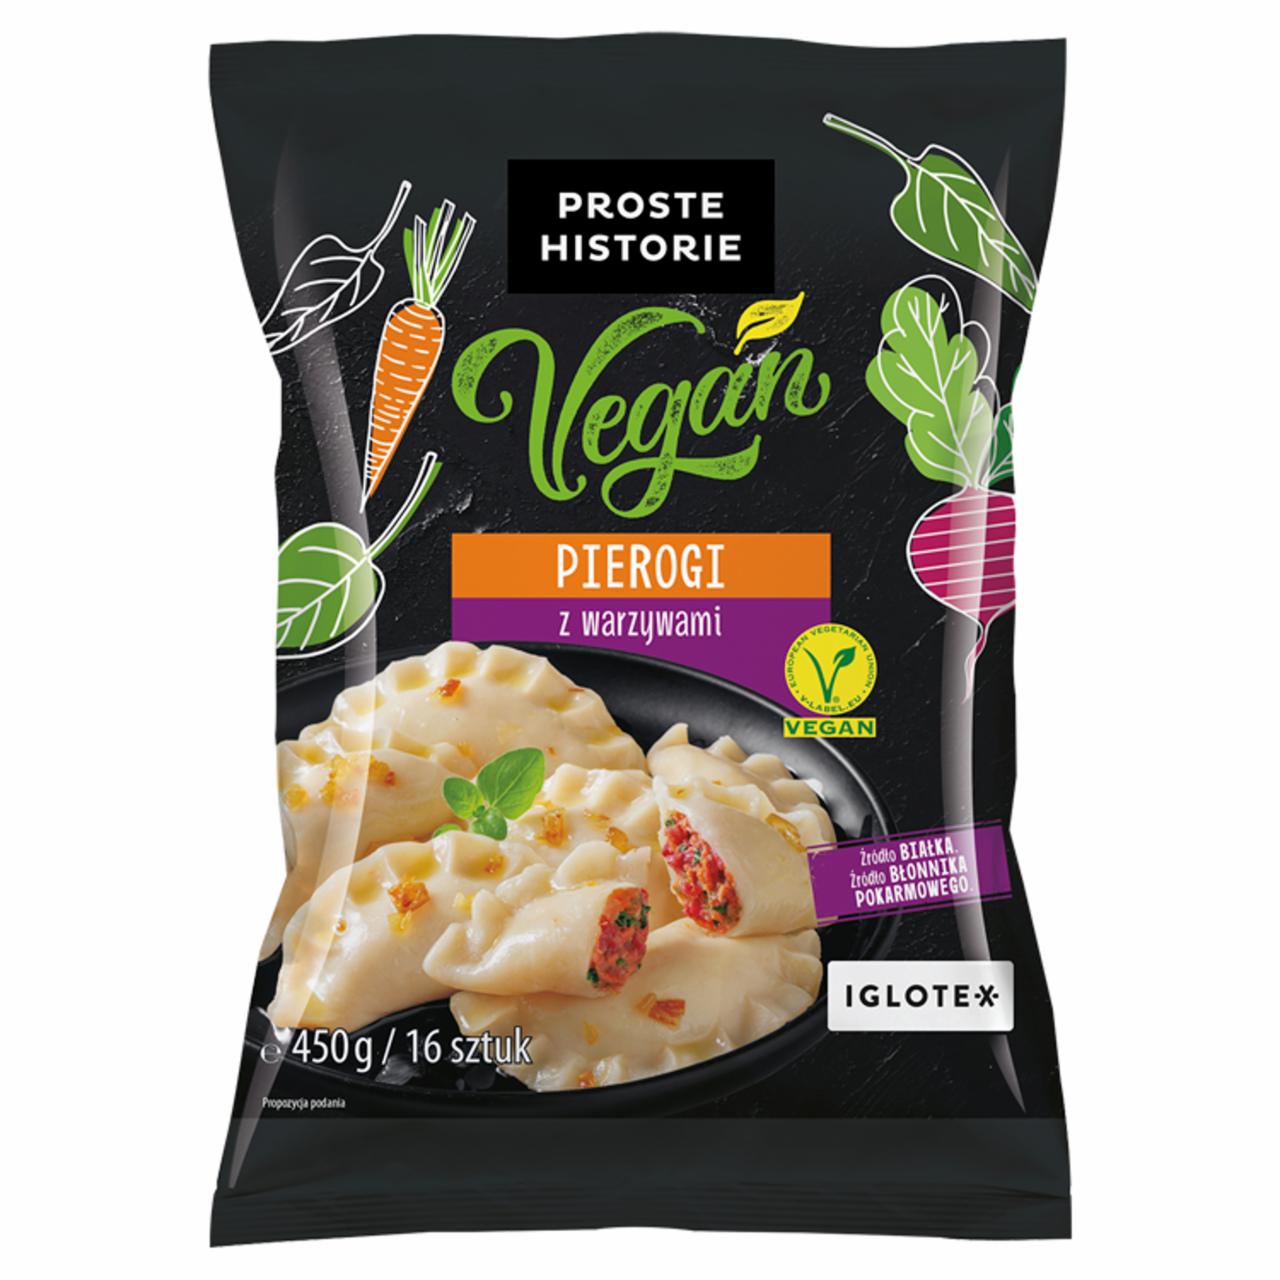 Zdjęcia - Pierogi z warzywami 450 g (16 sztuk) Vegan Proste Historie